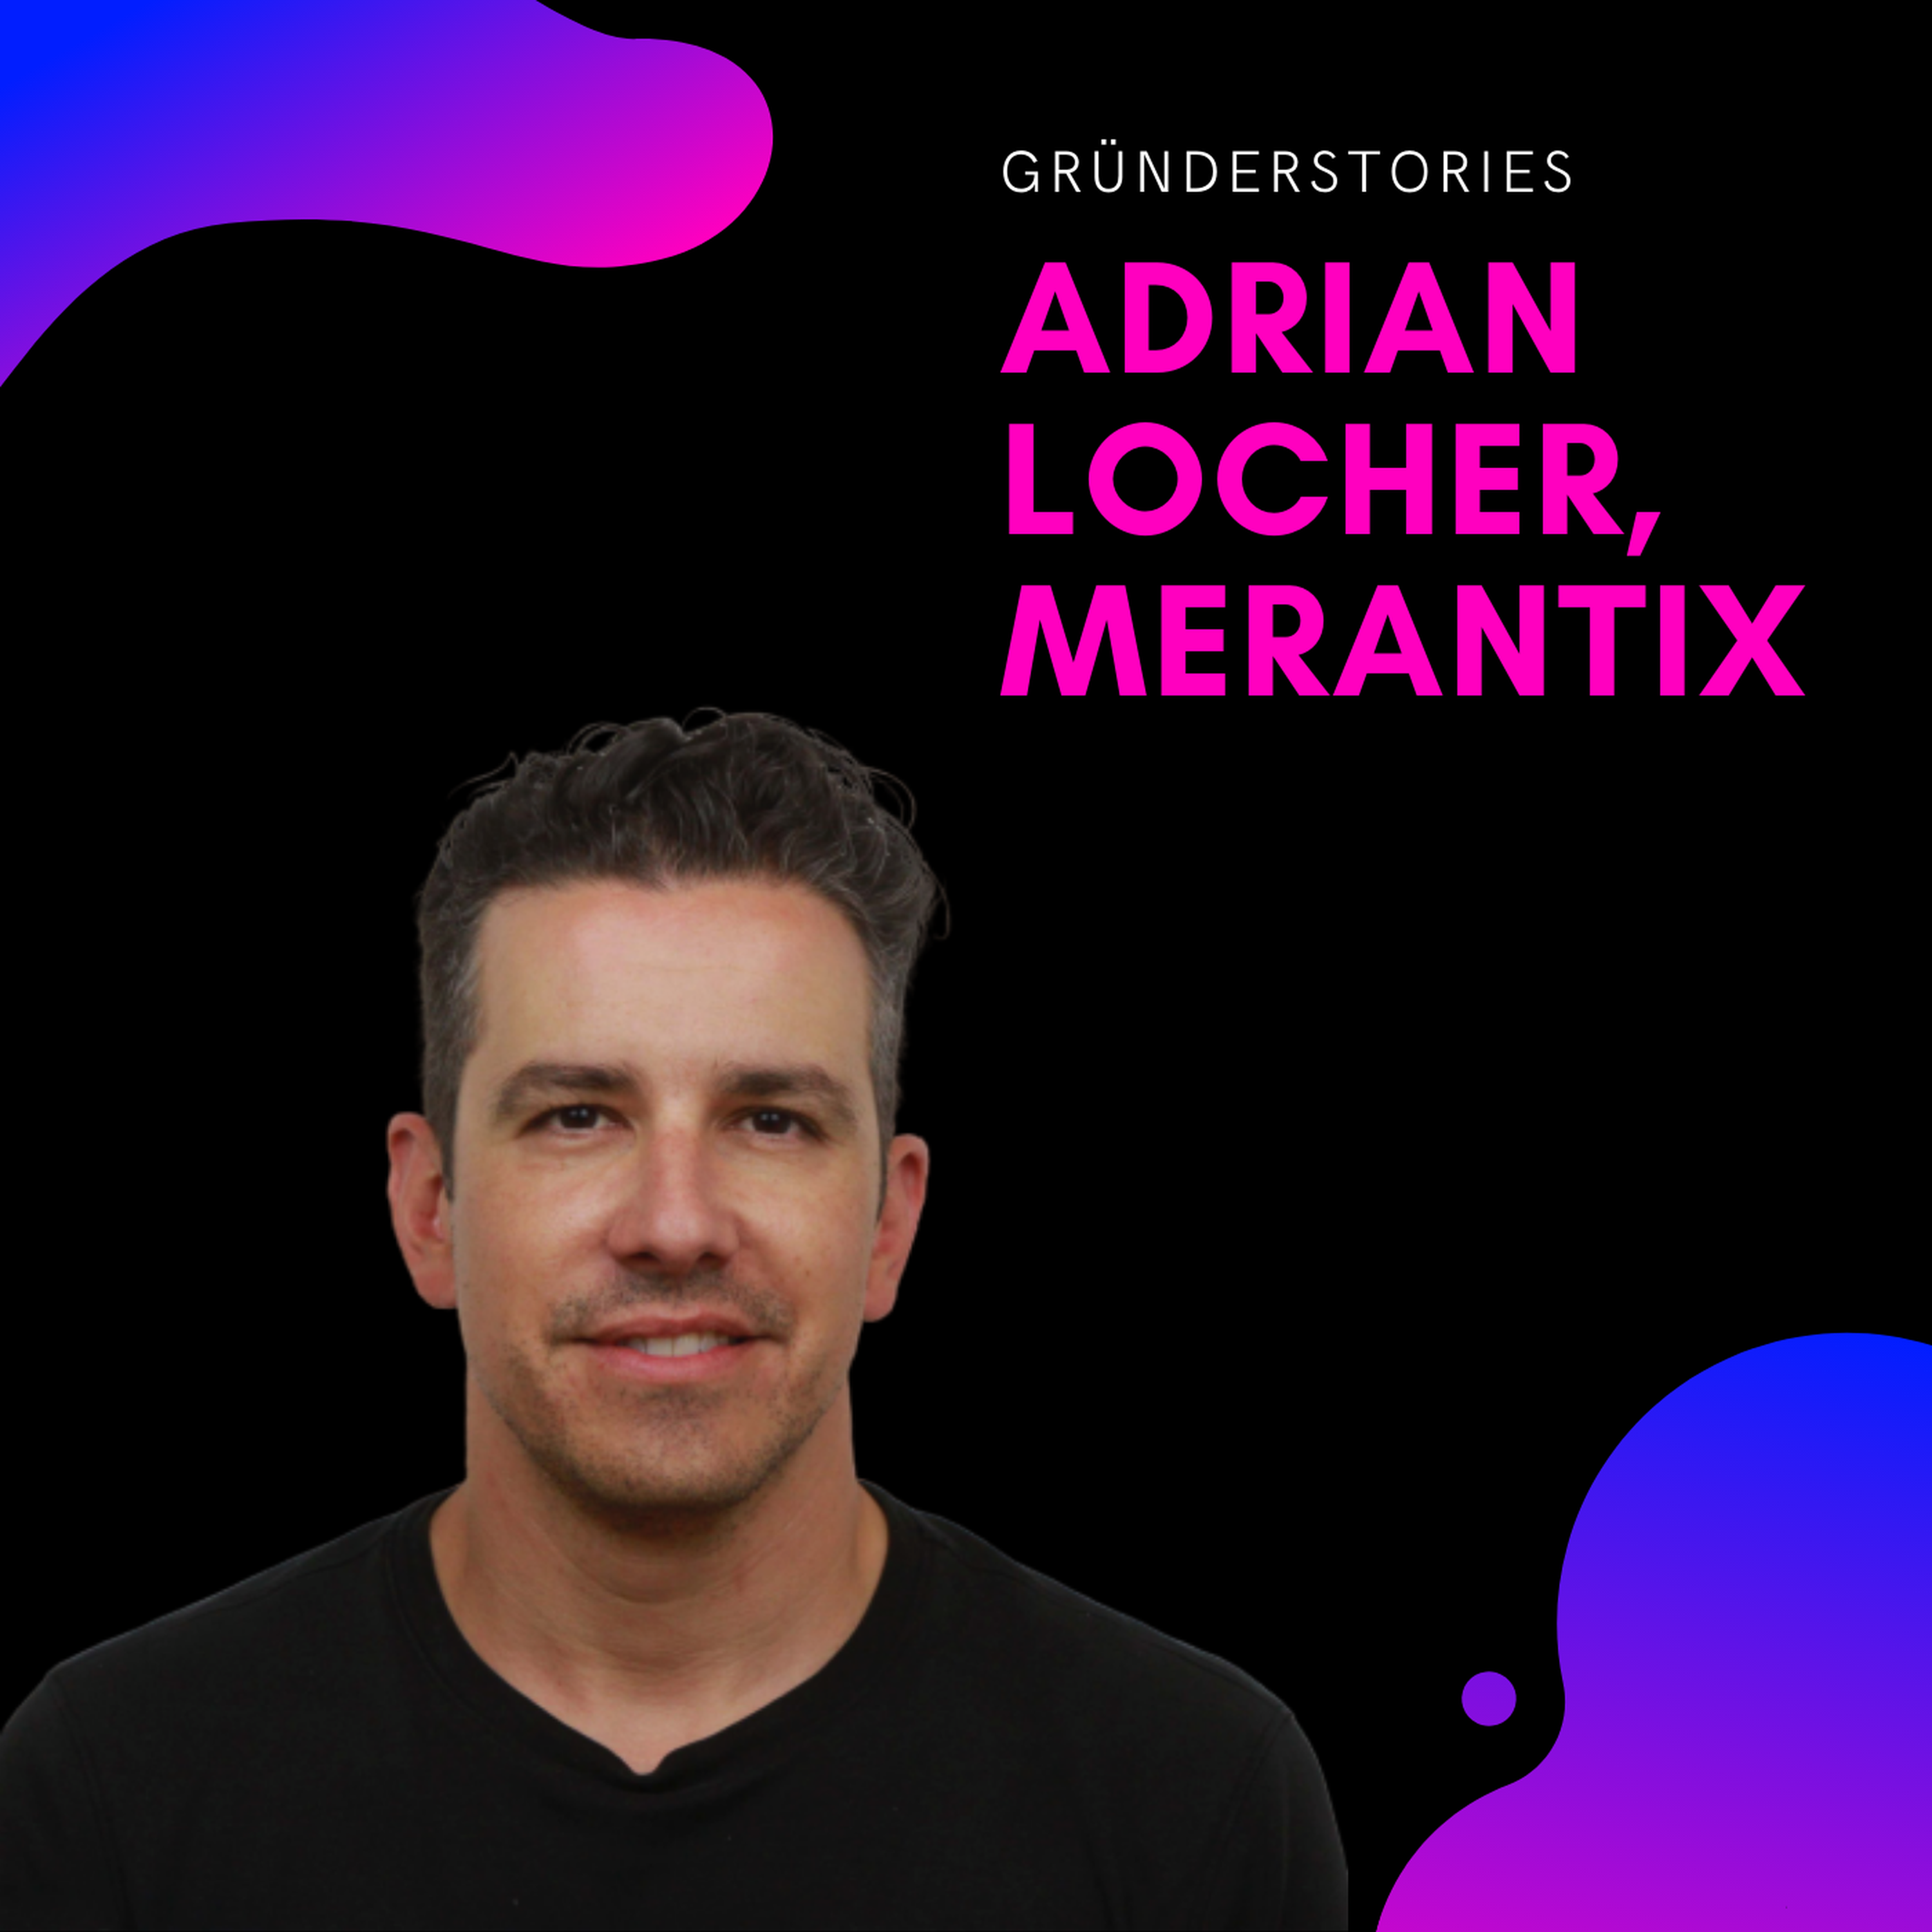 Adrian Locher, Merantix | Gründerstories